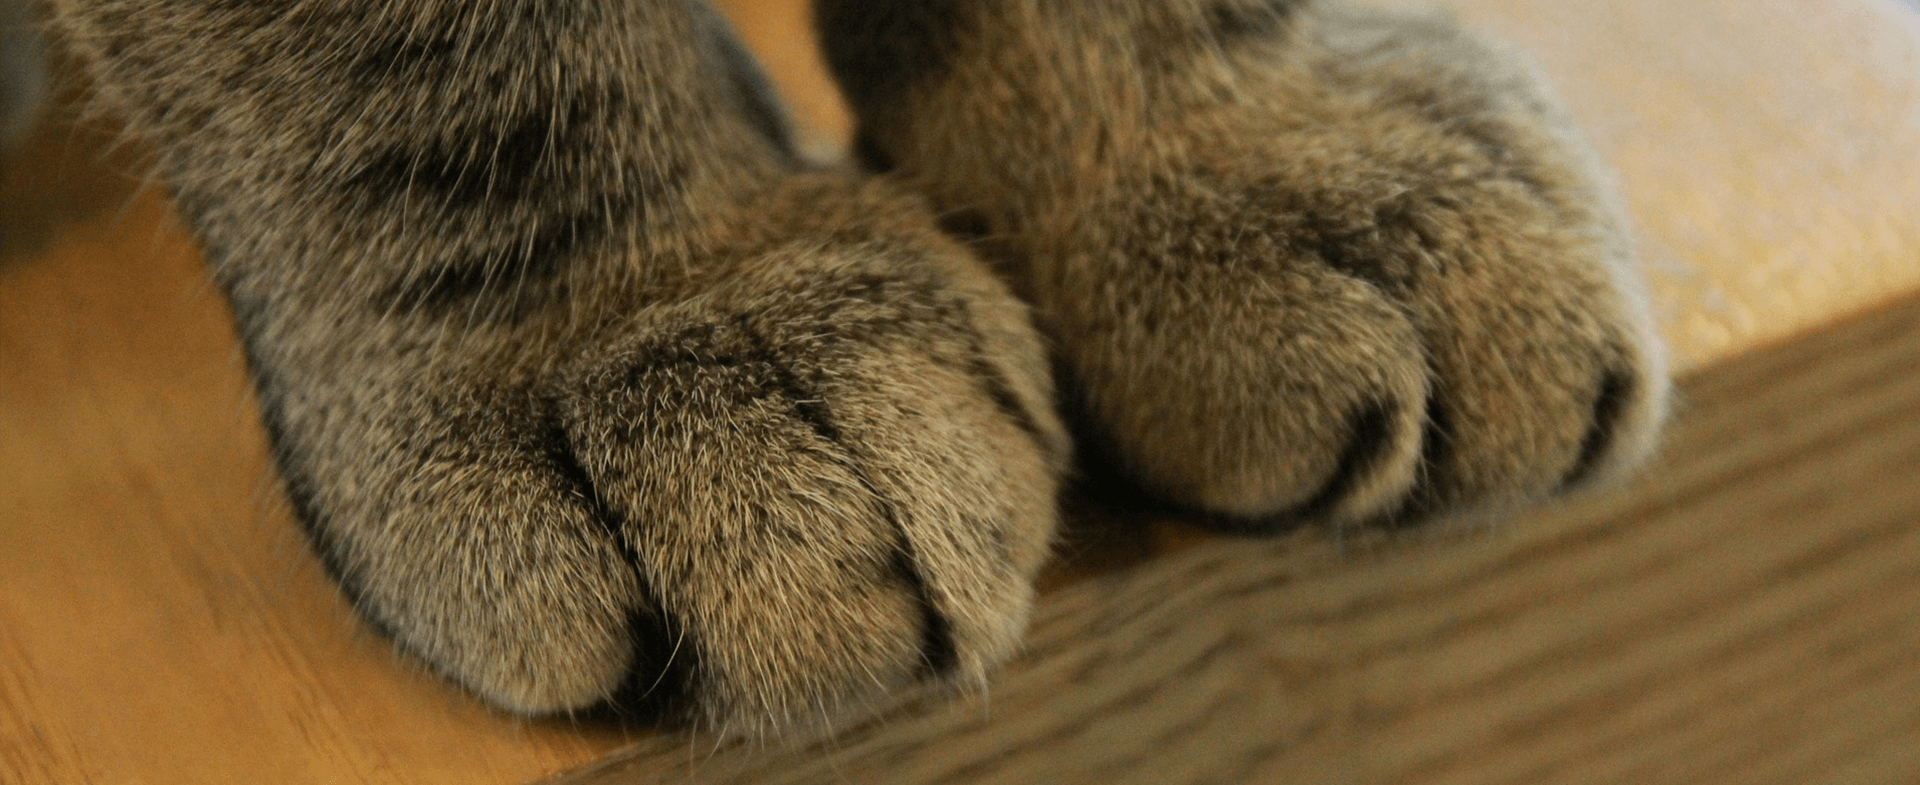  Tăierea ghearelor pisicilor ar putea fi interzisă, fiind dureroasă pentru acestea